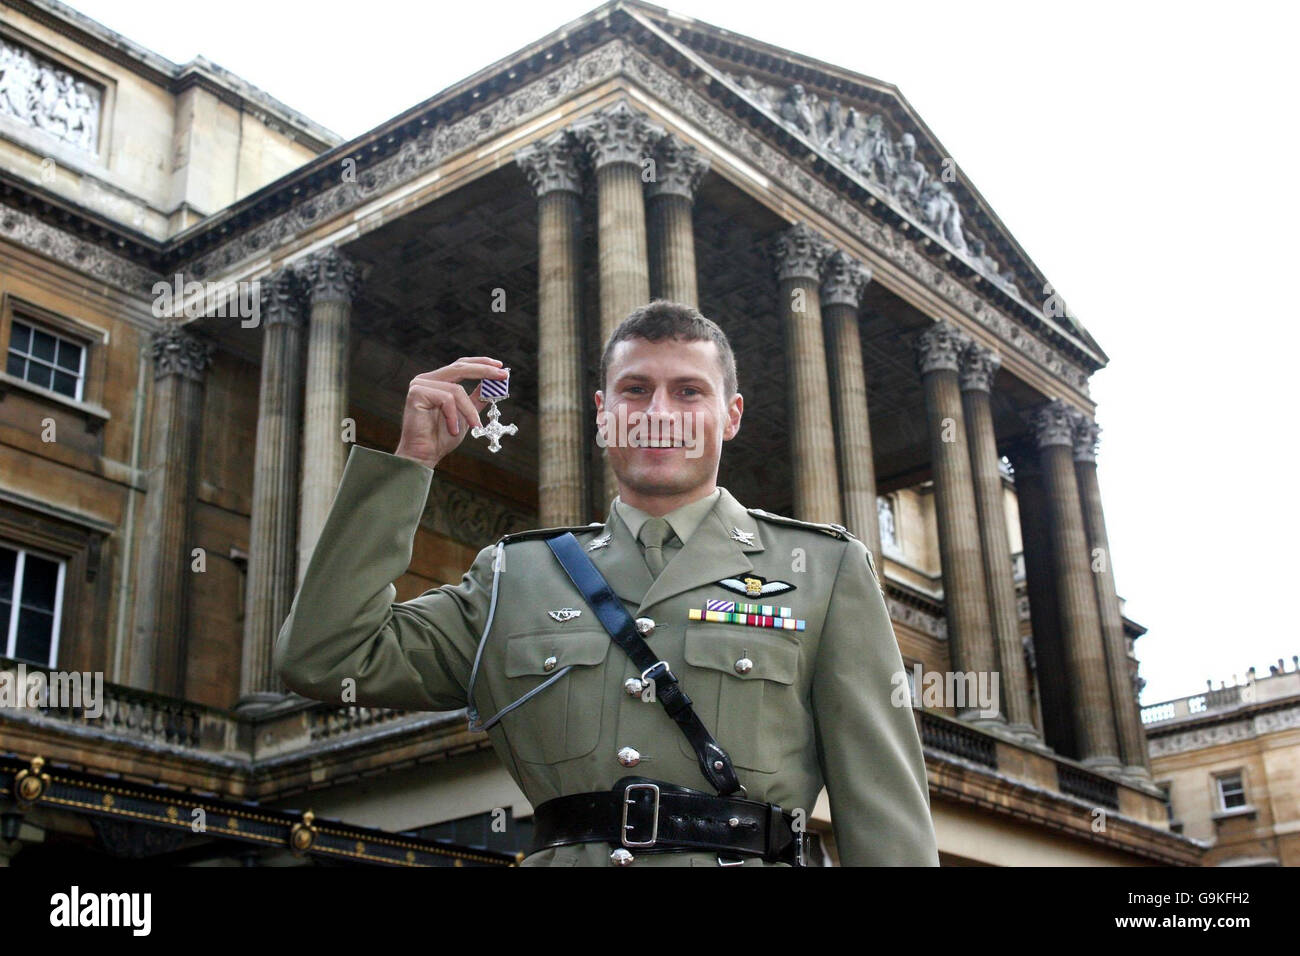 Il maggiore Scott Watkins dell'Australian Army Aviation Corps mostra con orgoglio la sua distinta Flying Cross a Buckingham Palace, nel centro di Londra. Foto Stock